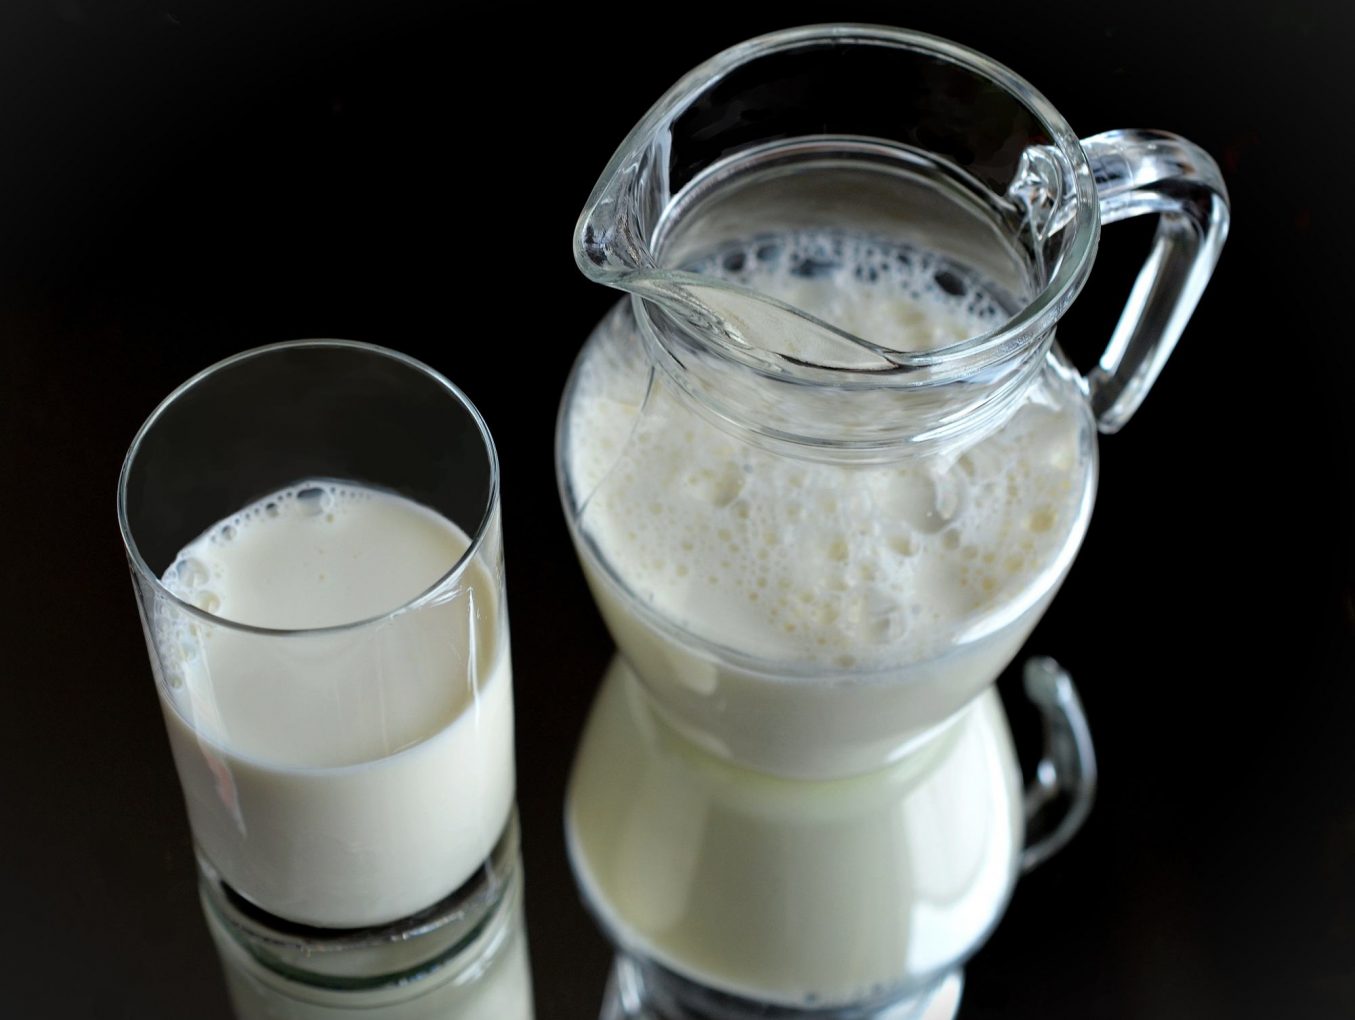 Il latte aumenta i livelli di colesterolo nel sangue?